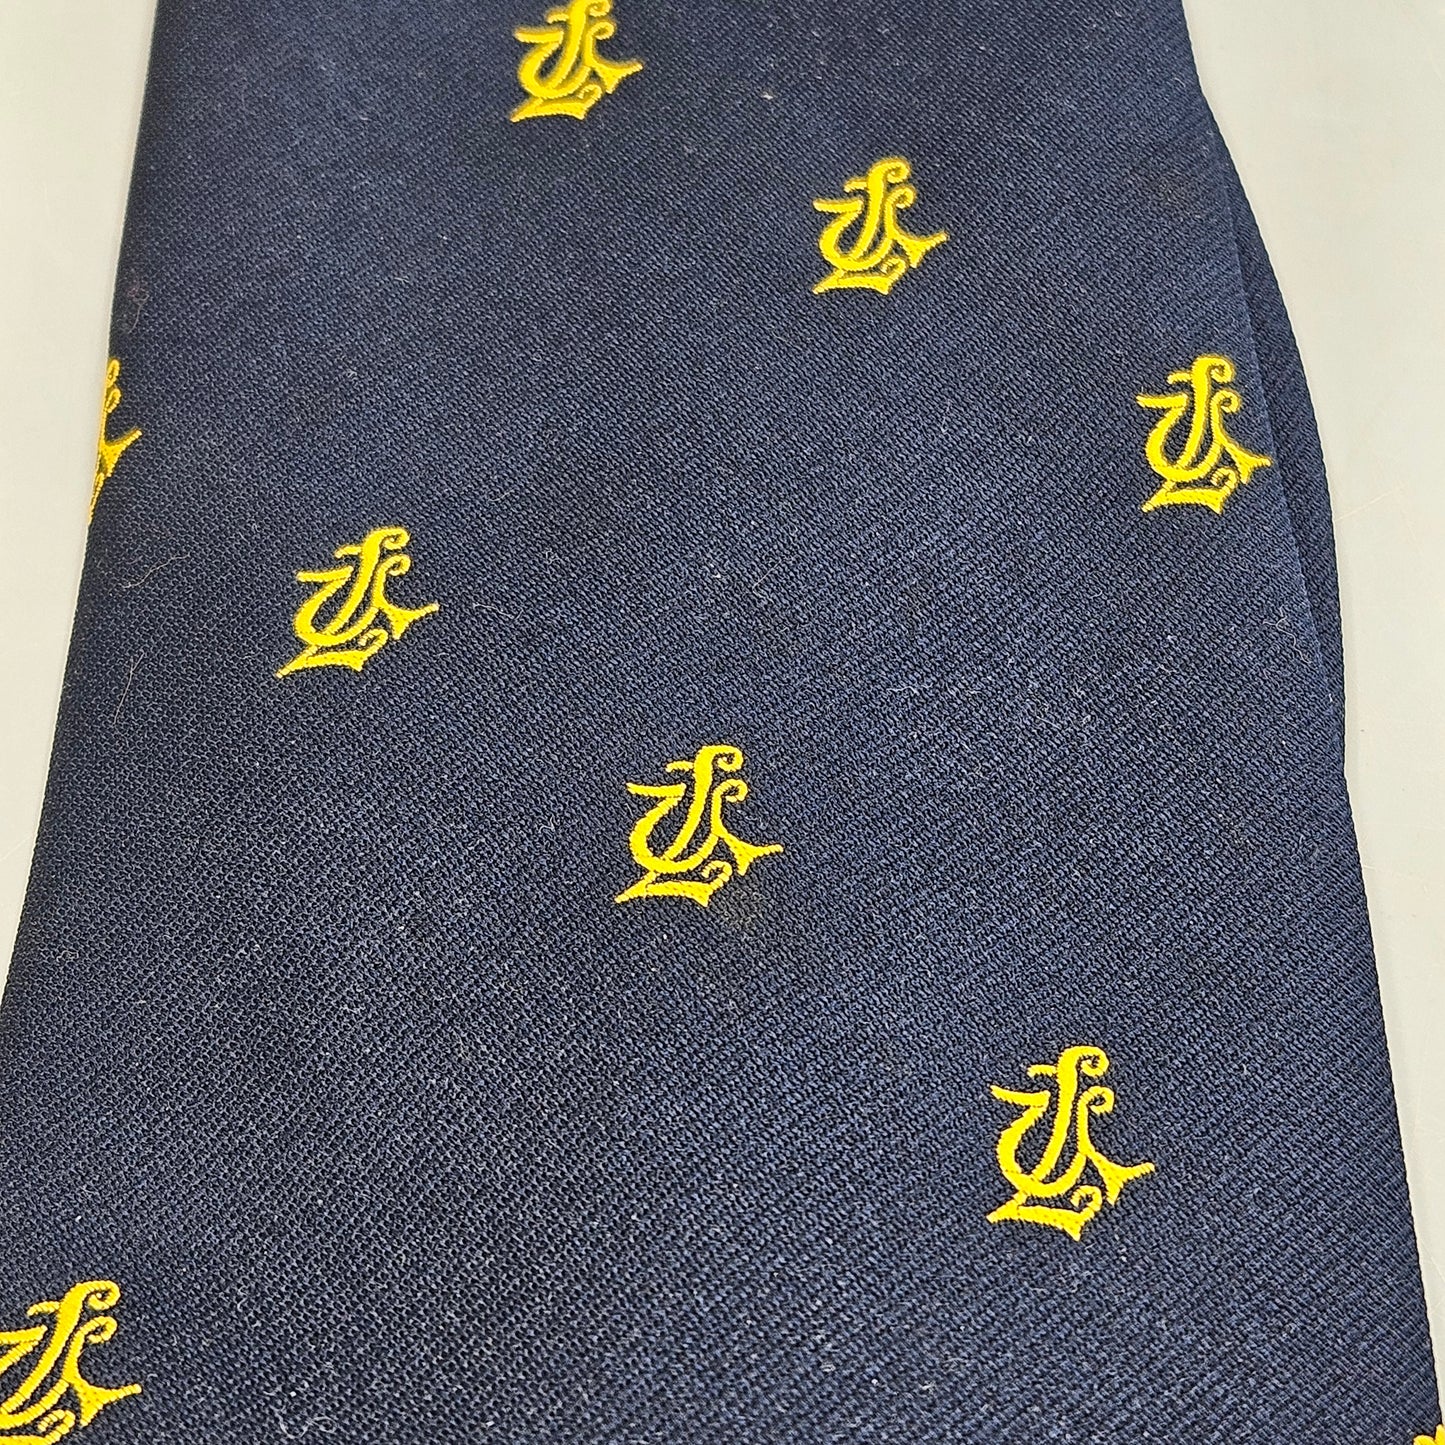 Vintage Navy Blue Union League Tie